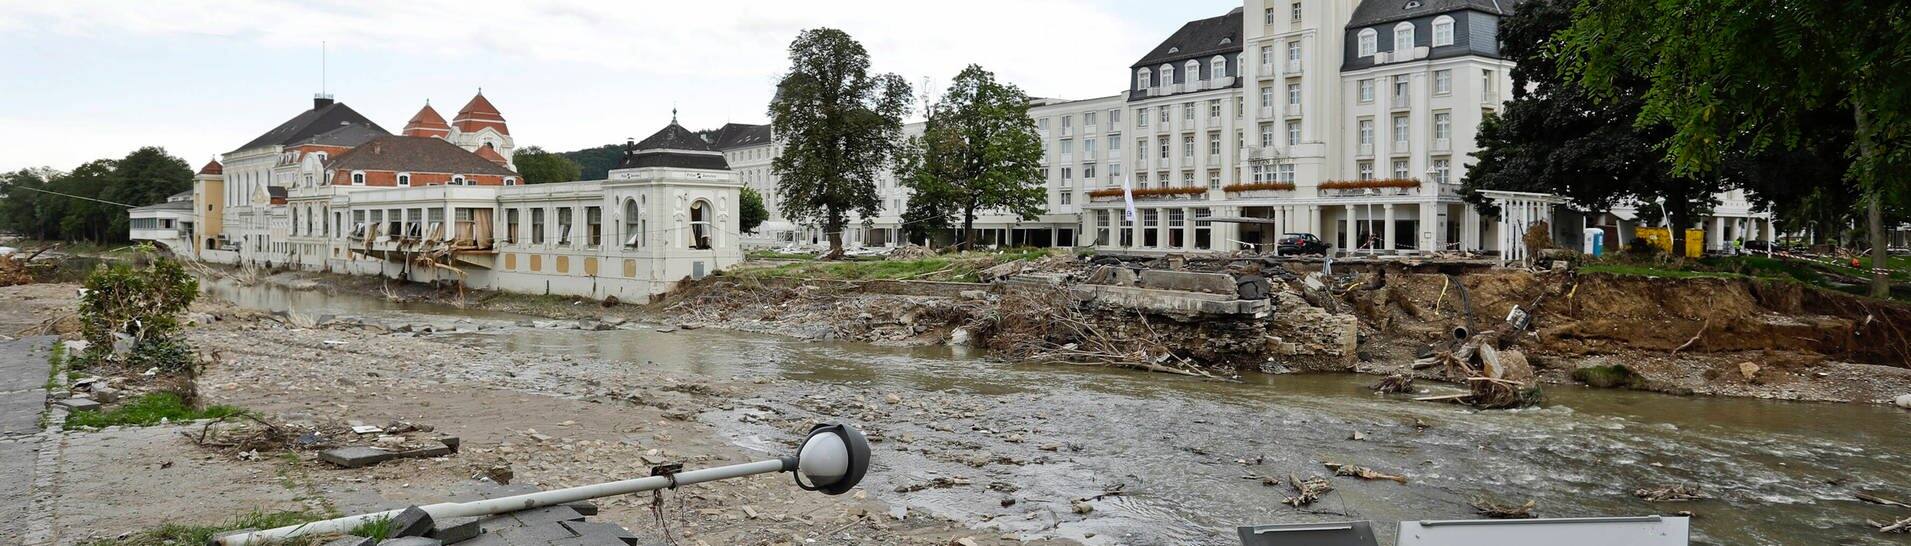 Von der Flut Mitte Juli verursachte Schäden am Flussufer in Bad Neuenahr. Im Hintergrund links das Kurhaus und rechts das Hotel am Kurpark mit seinem markantem Turm.  (Foto: imago images, imago images/Reiner Zensen)